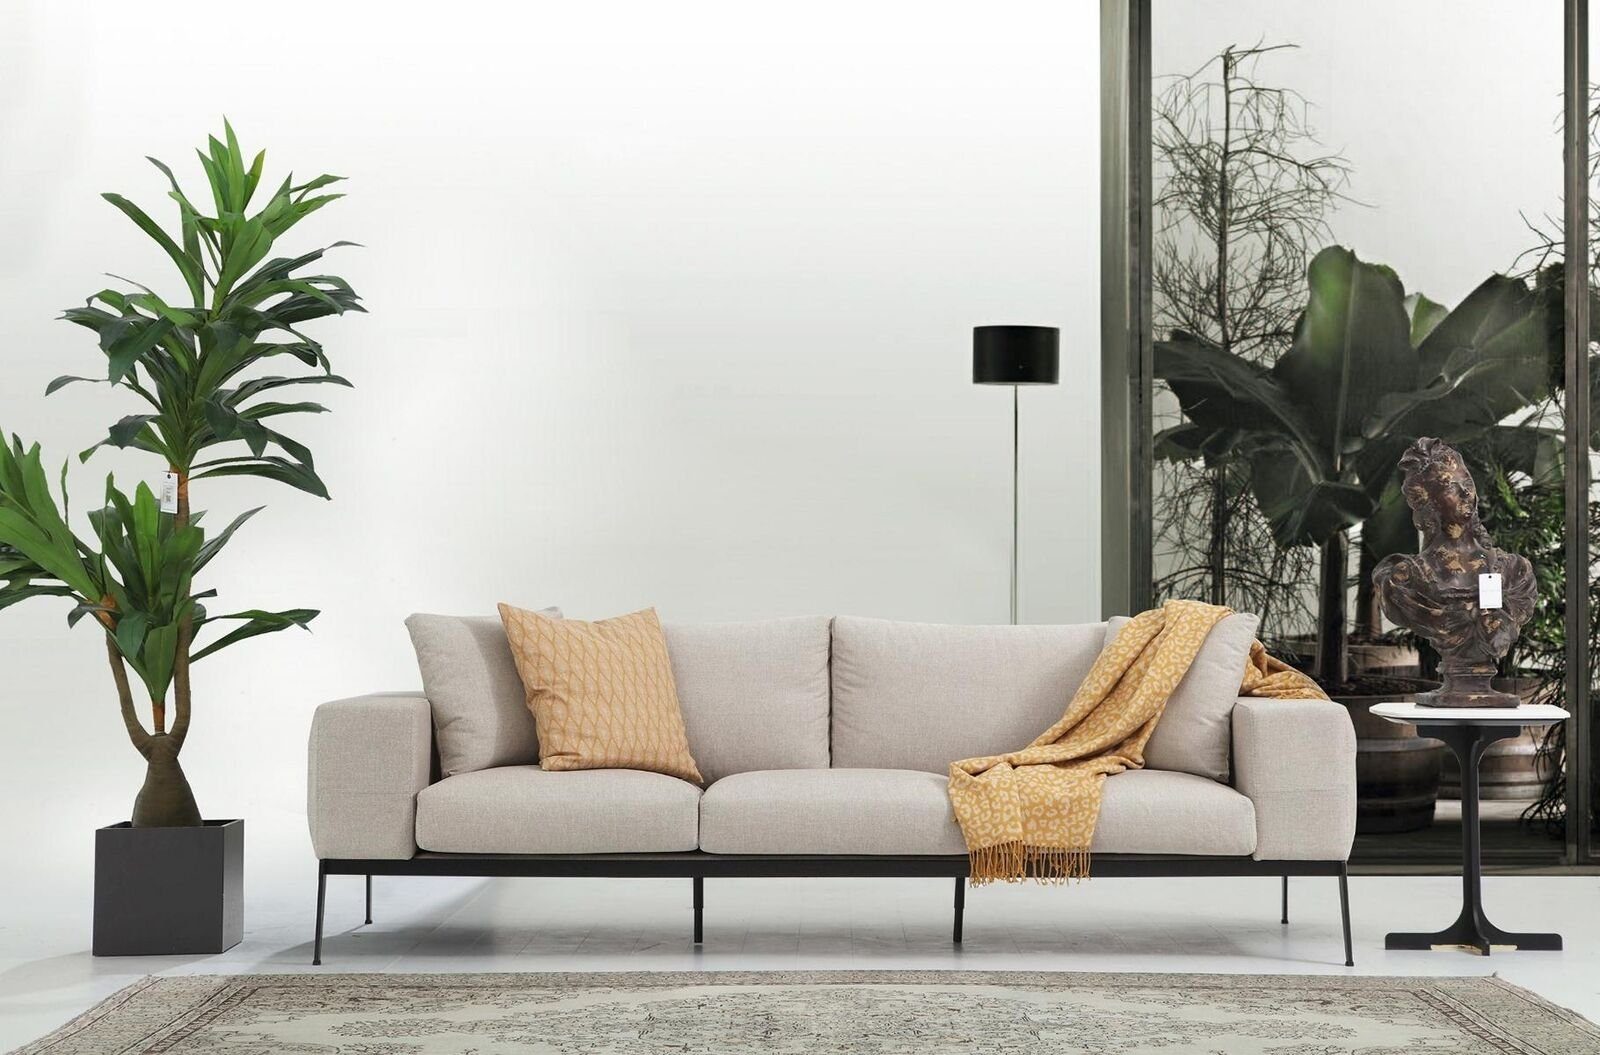 JVmoebel 3-Sitzer Dreisitzer Sofa 3 Sitzer Sofas Beige Stoff Wohnzimmer Luxus Modern Neu, 1 Teile, Made in Europa